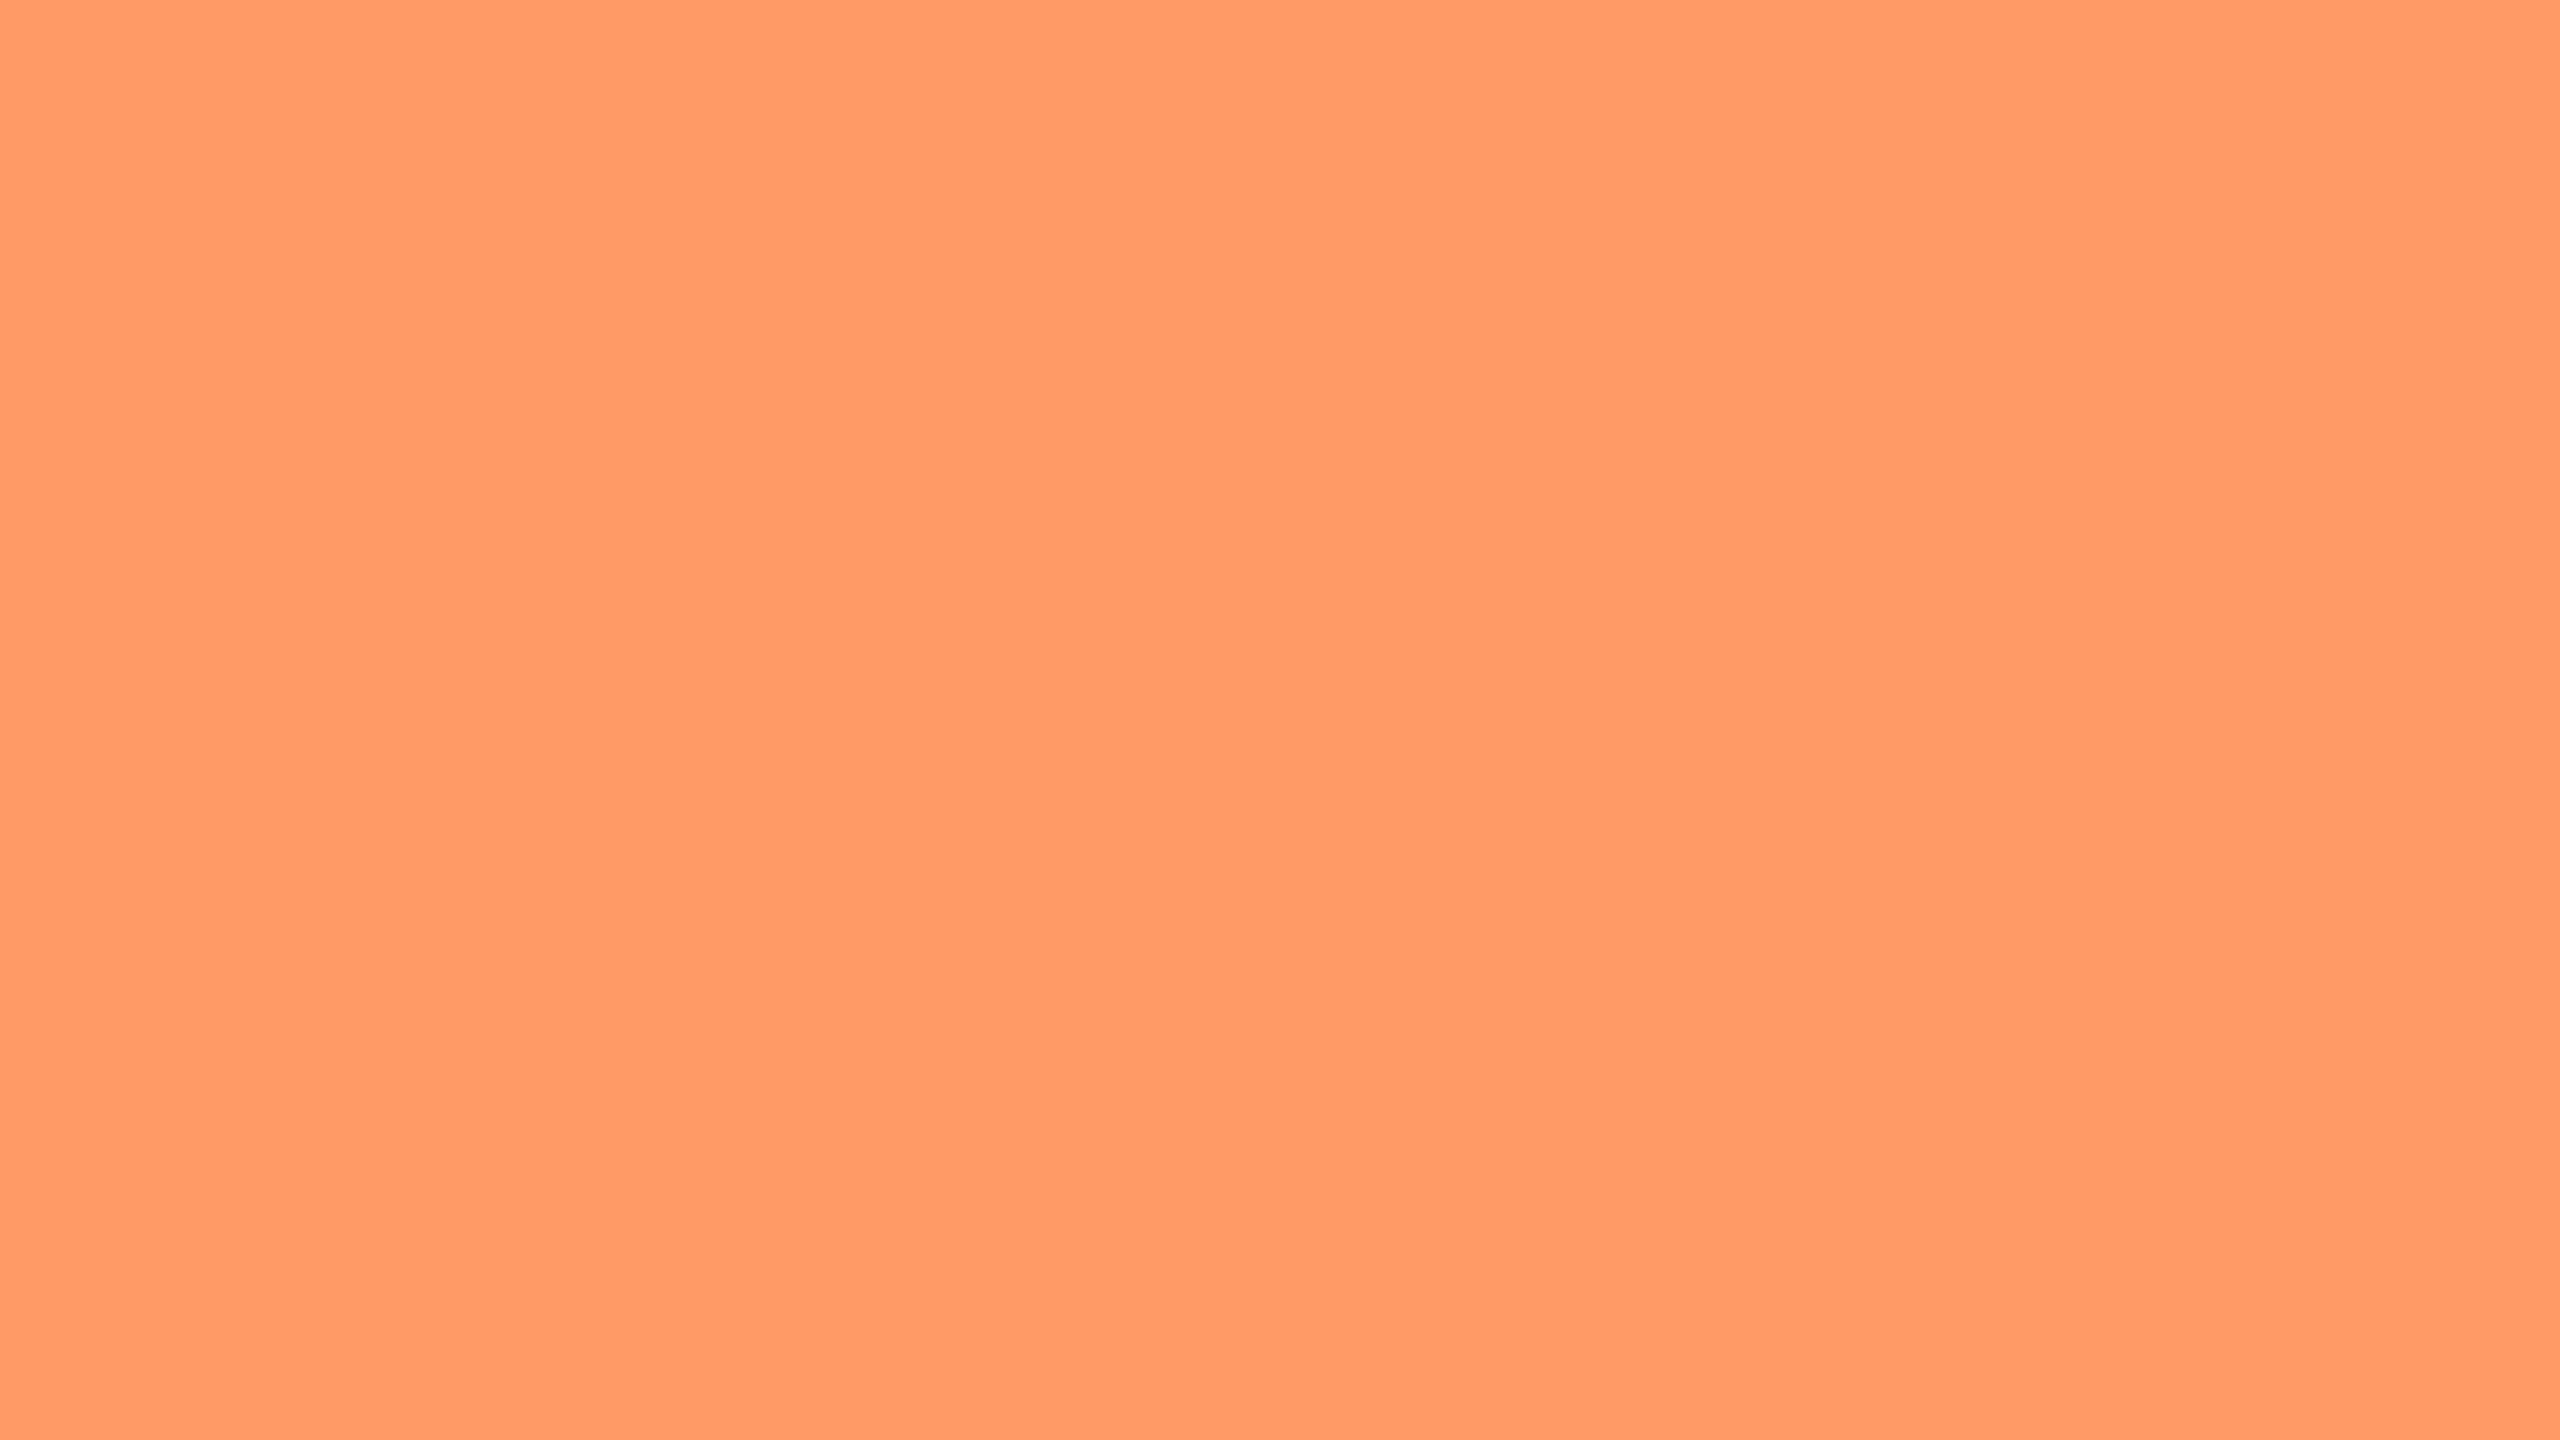 Hình nền tường màu cam đậm làm tôn lên sự sang trọng và tinh tế cho bất kỳ không gian nào. Hội tụ sự cổ điển với sự hiện đại, gam màu cam đậm chắc chắn sẽ là điểm nhấn độc đáo cho bức ảnh của bạn.